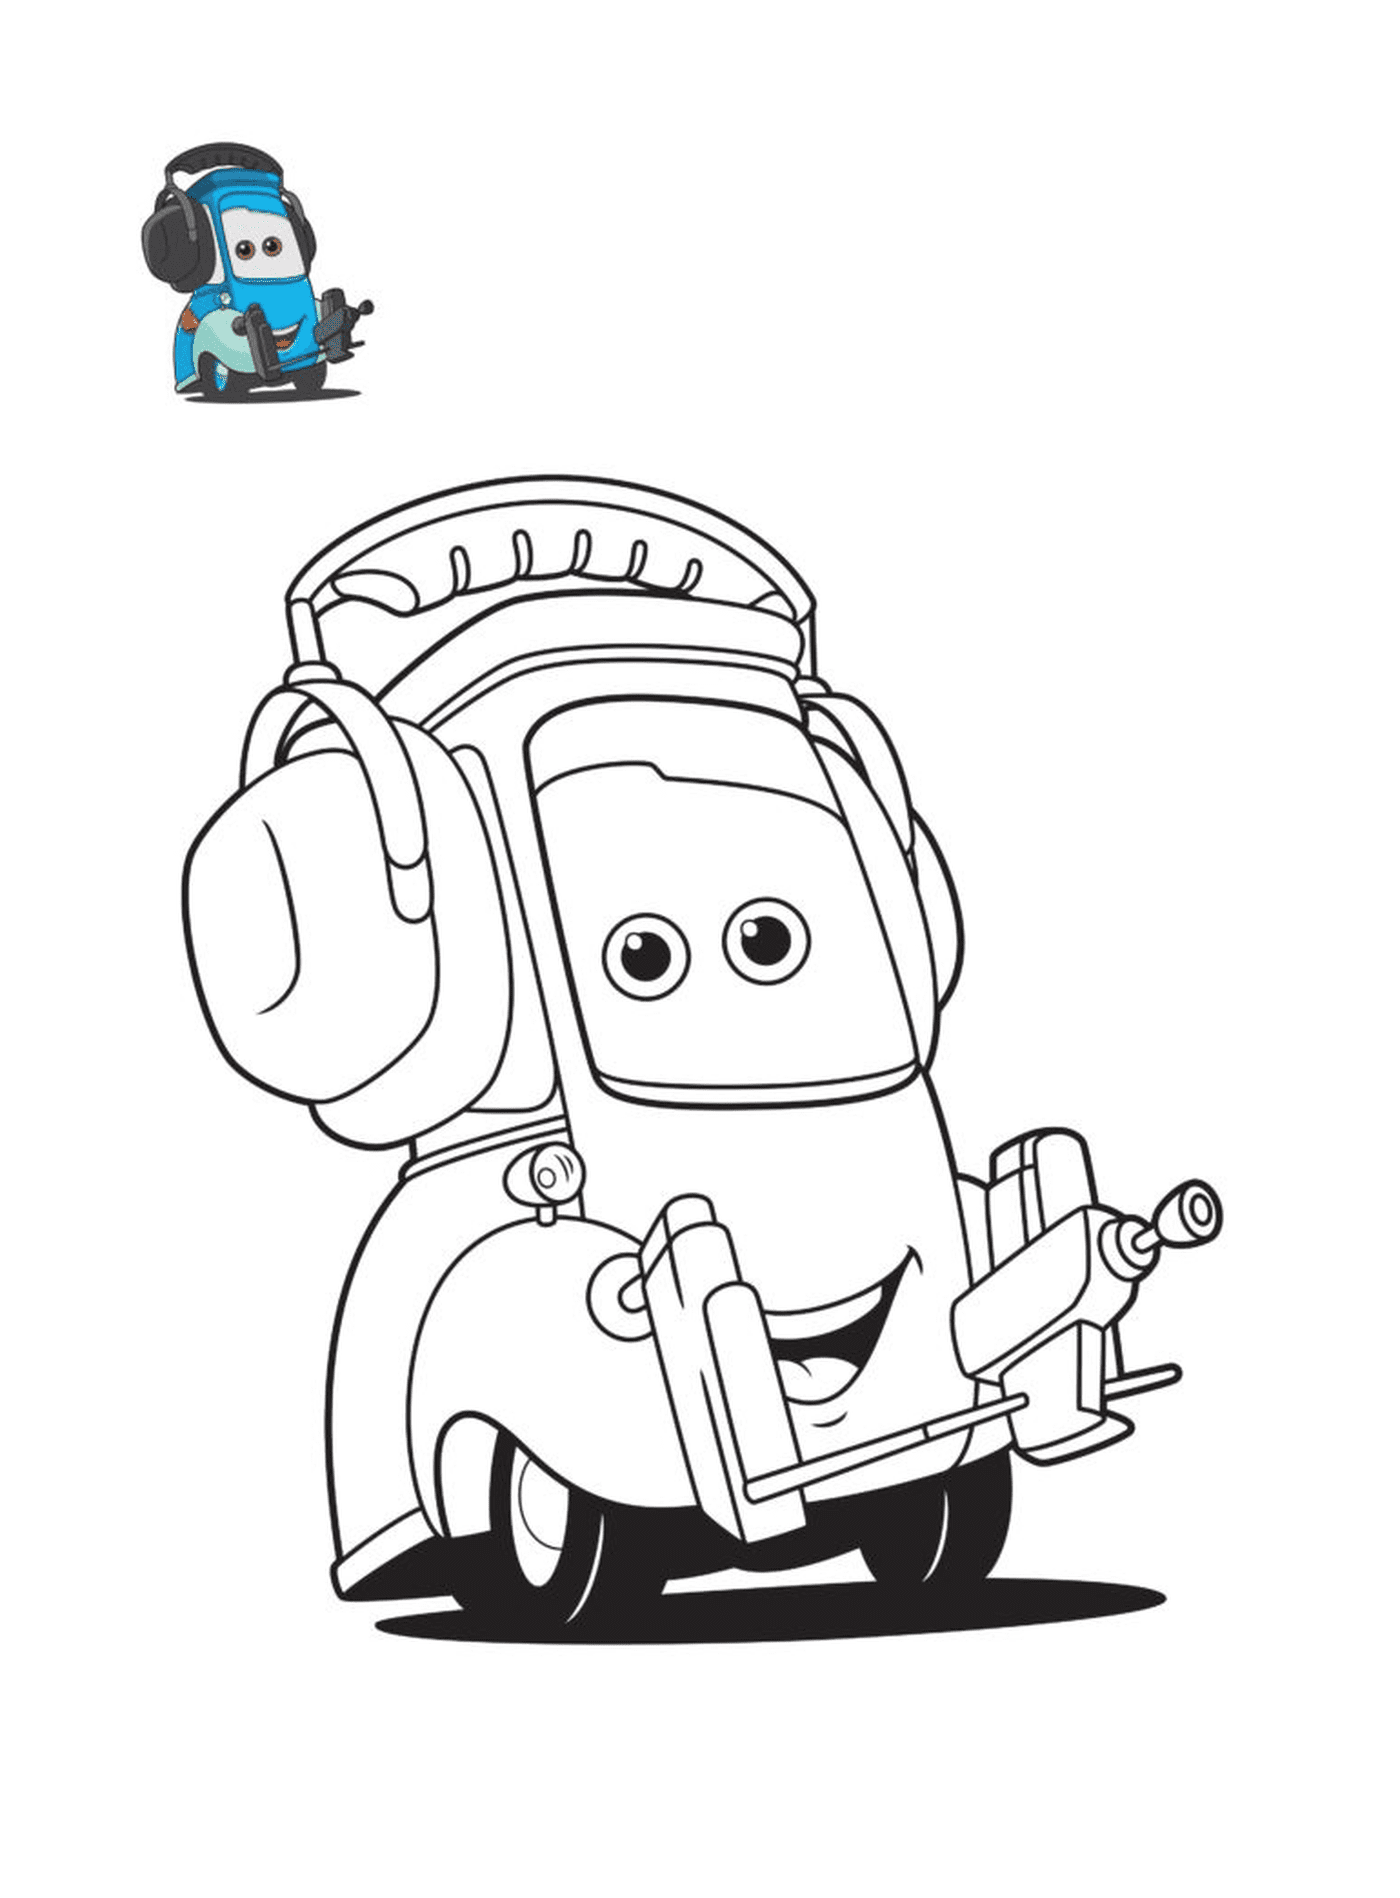  Cars 3, Guido, personaggio del film Cars, una macchina con cuffie 